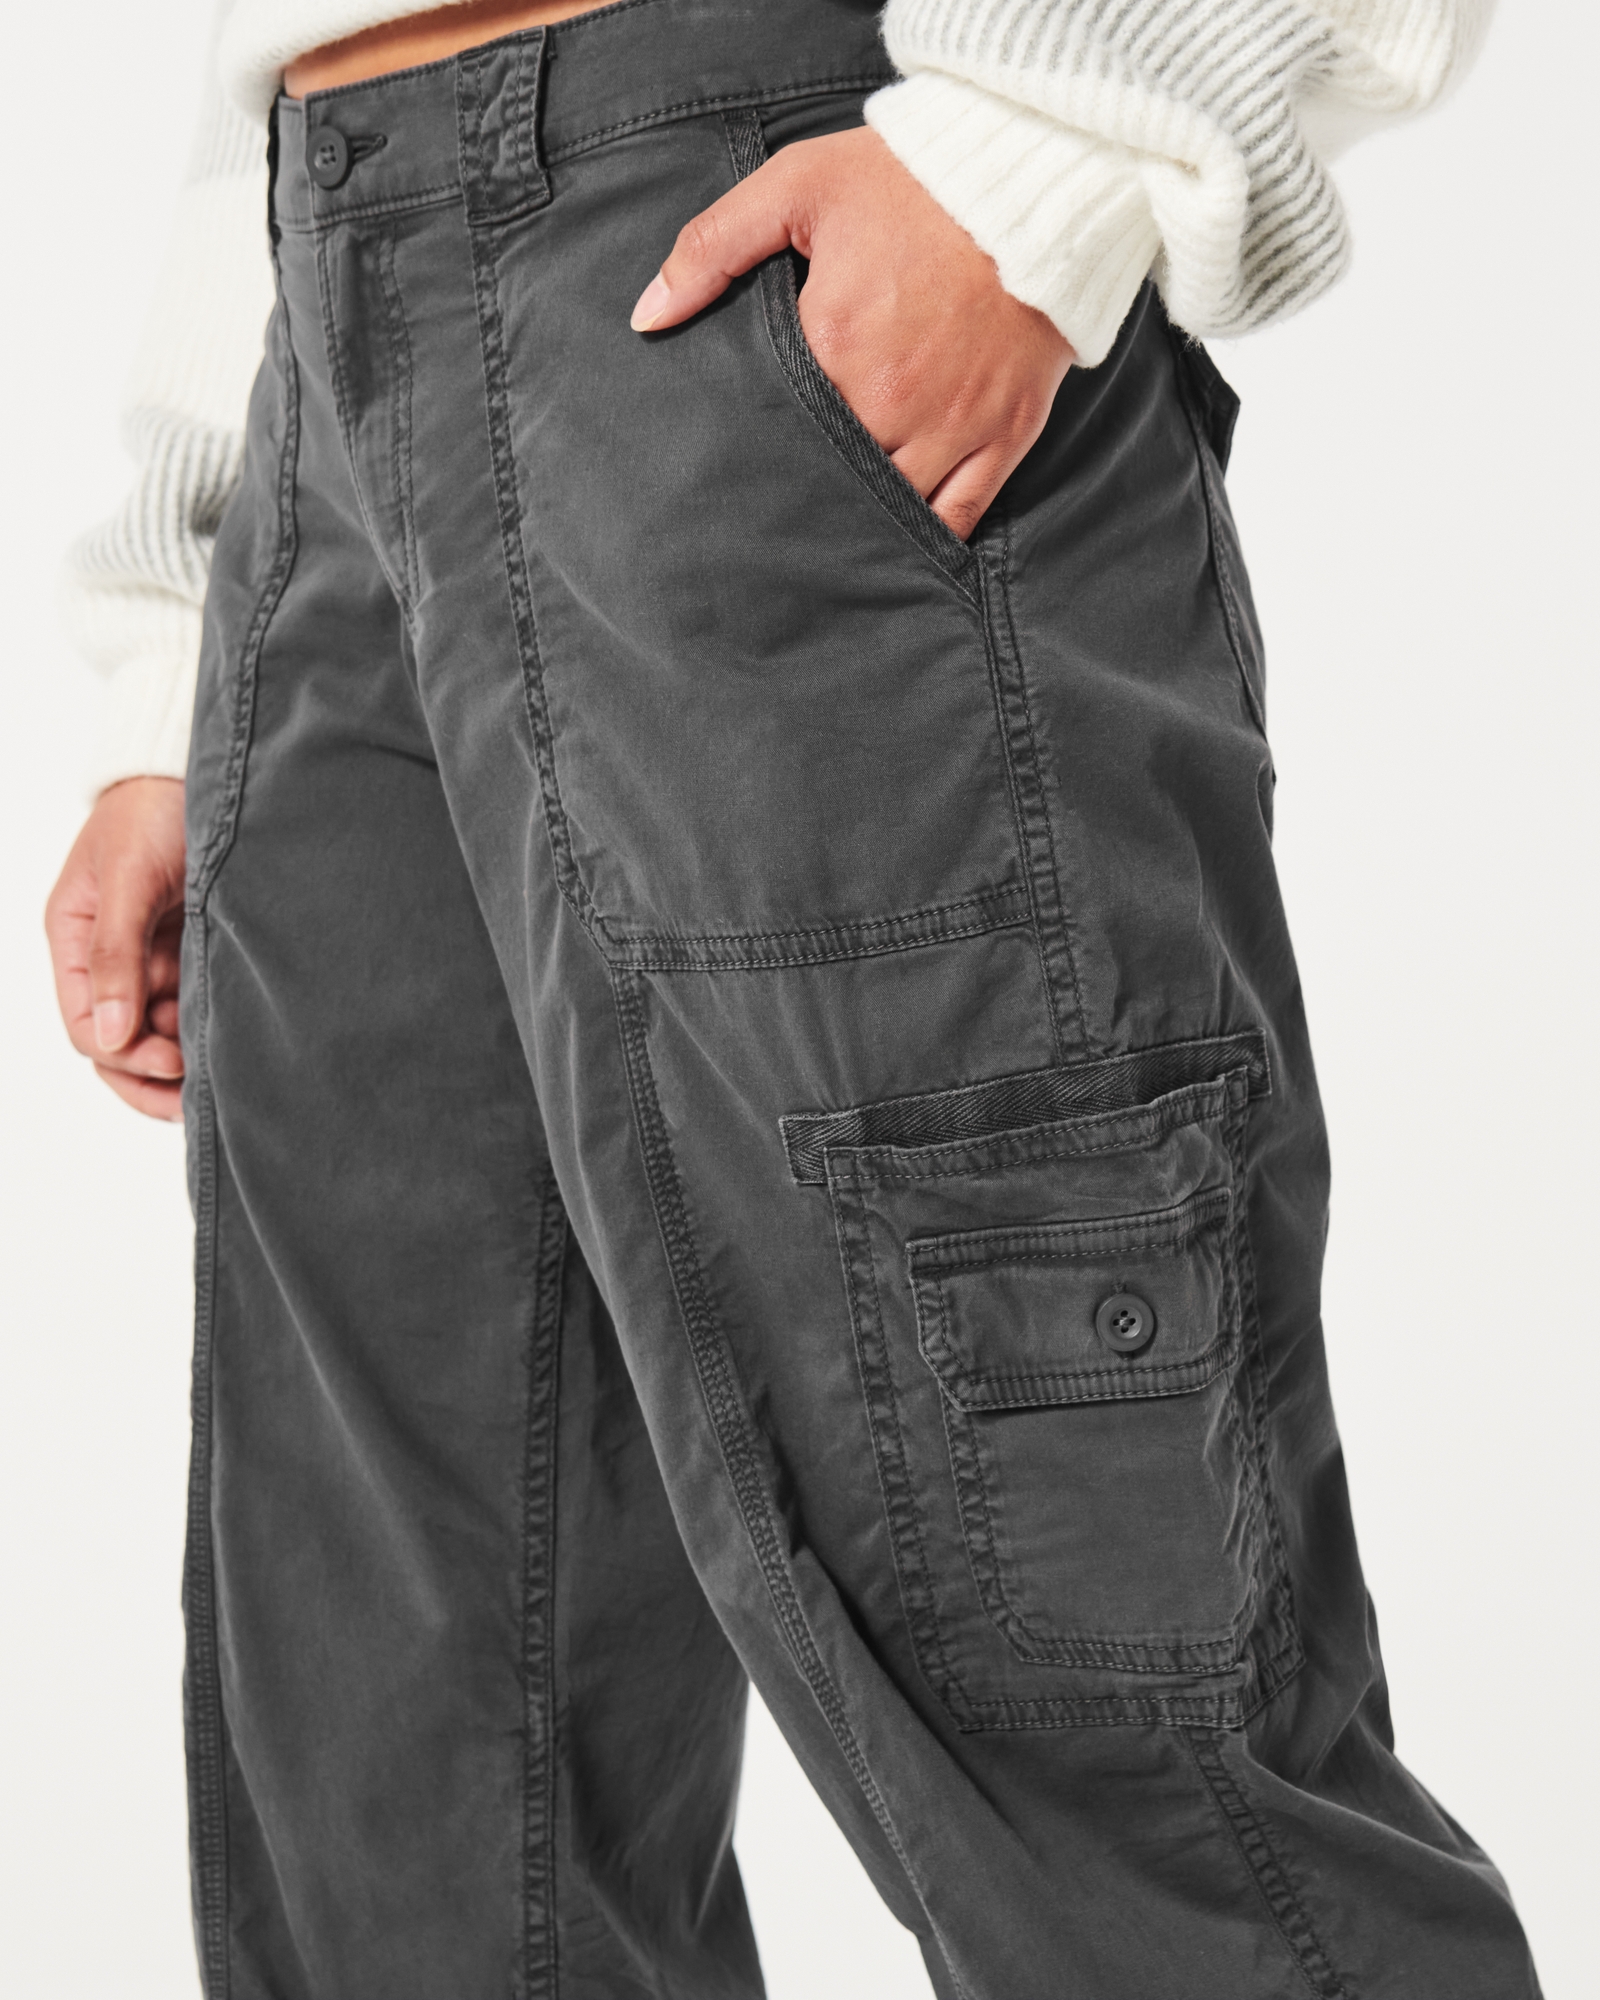 Cargo Pants Women Oversized Boyfriend Gray Low Waist Loose Baggy Jeans -   Canada